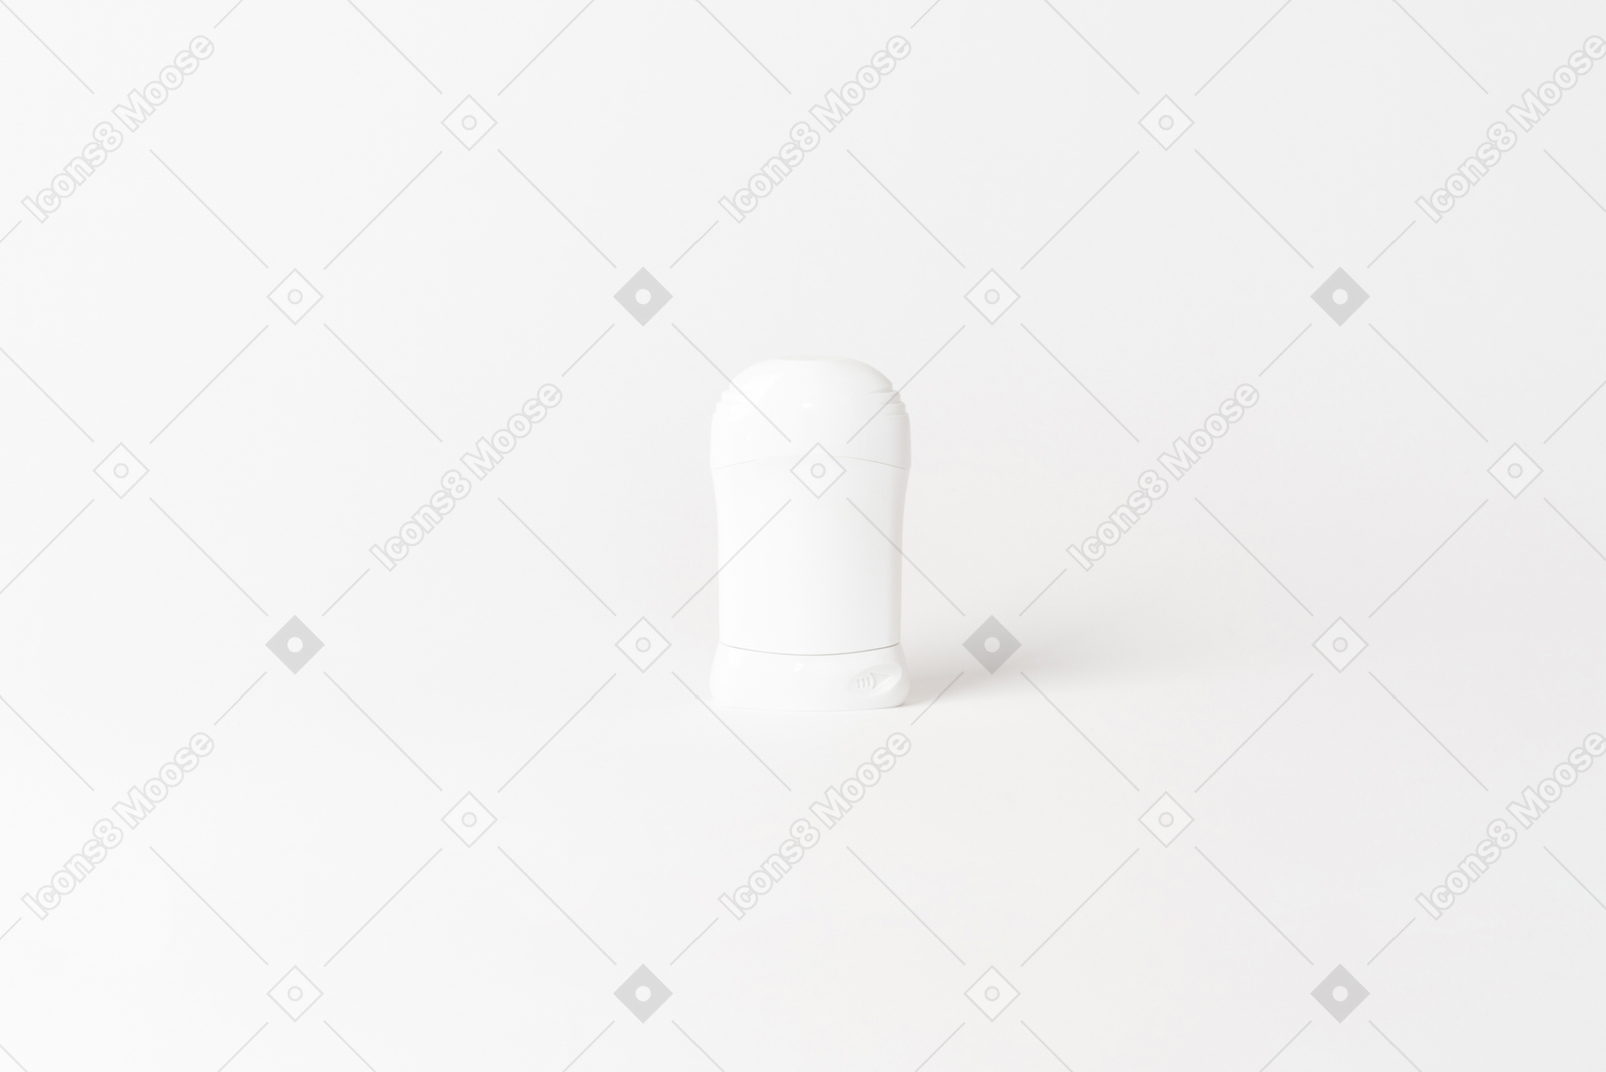 Singolo oggetto isolato su sfondo bianco